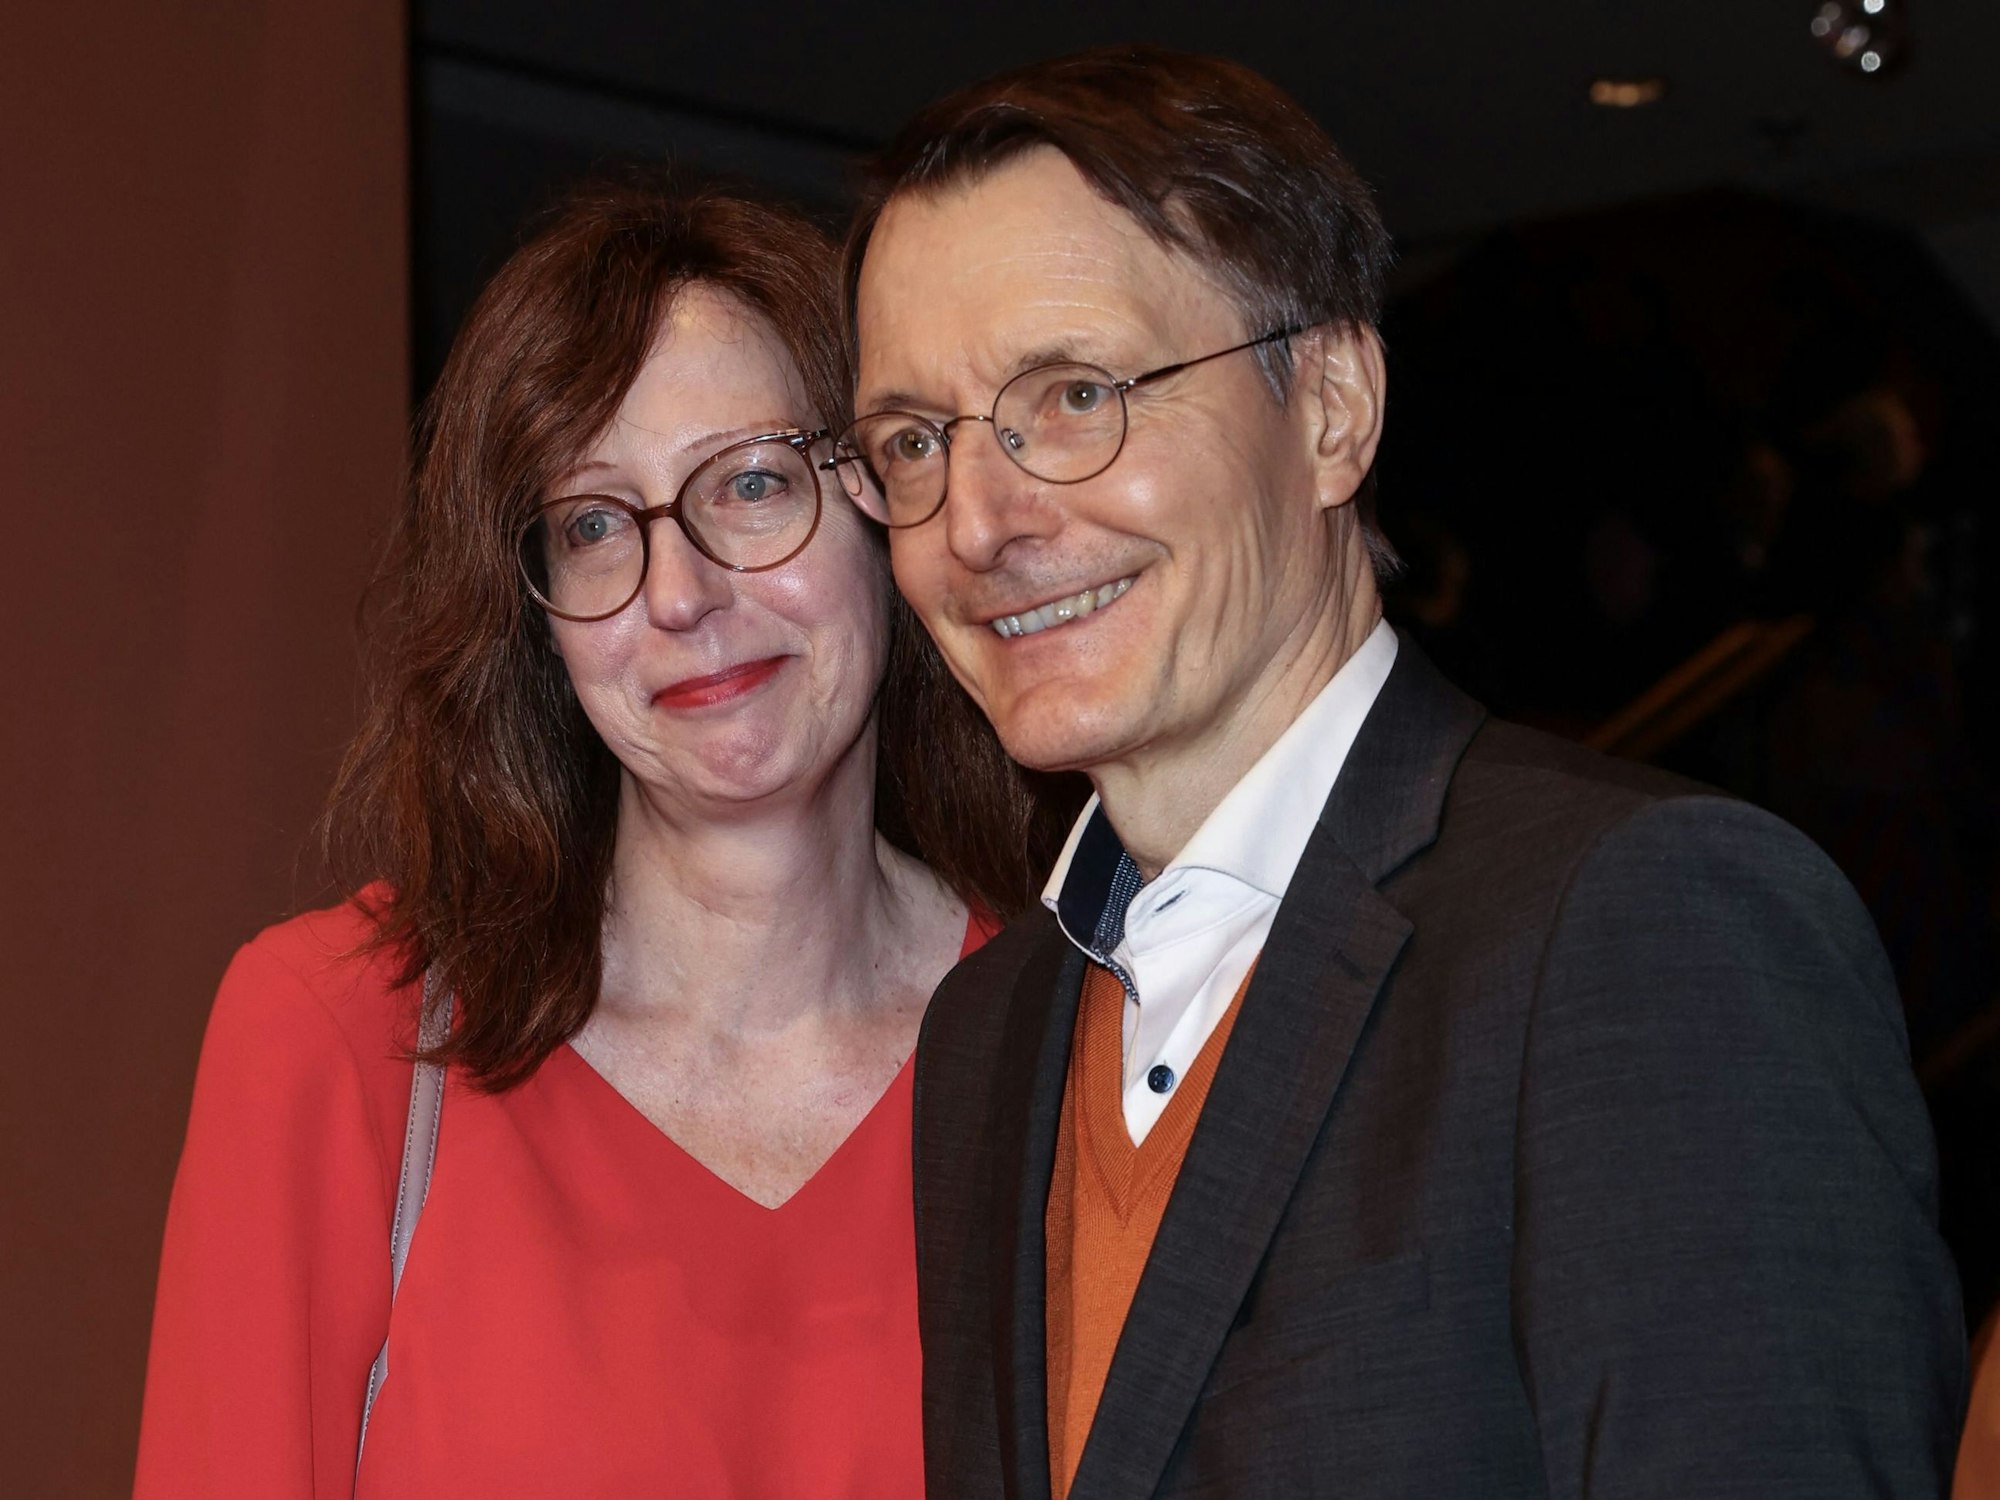 Karl Lauterbach erschien zusammen mit seiner Freundin Elisabeth Niejahr auf der Berlinale.